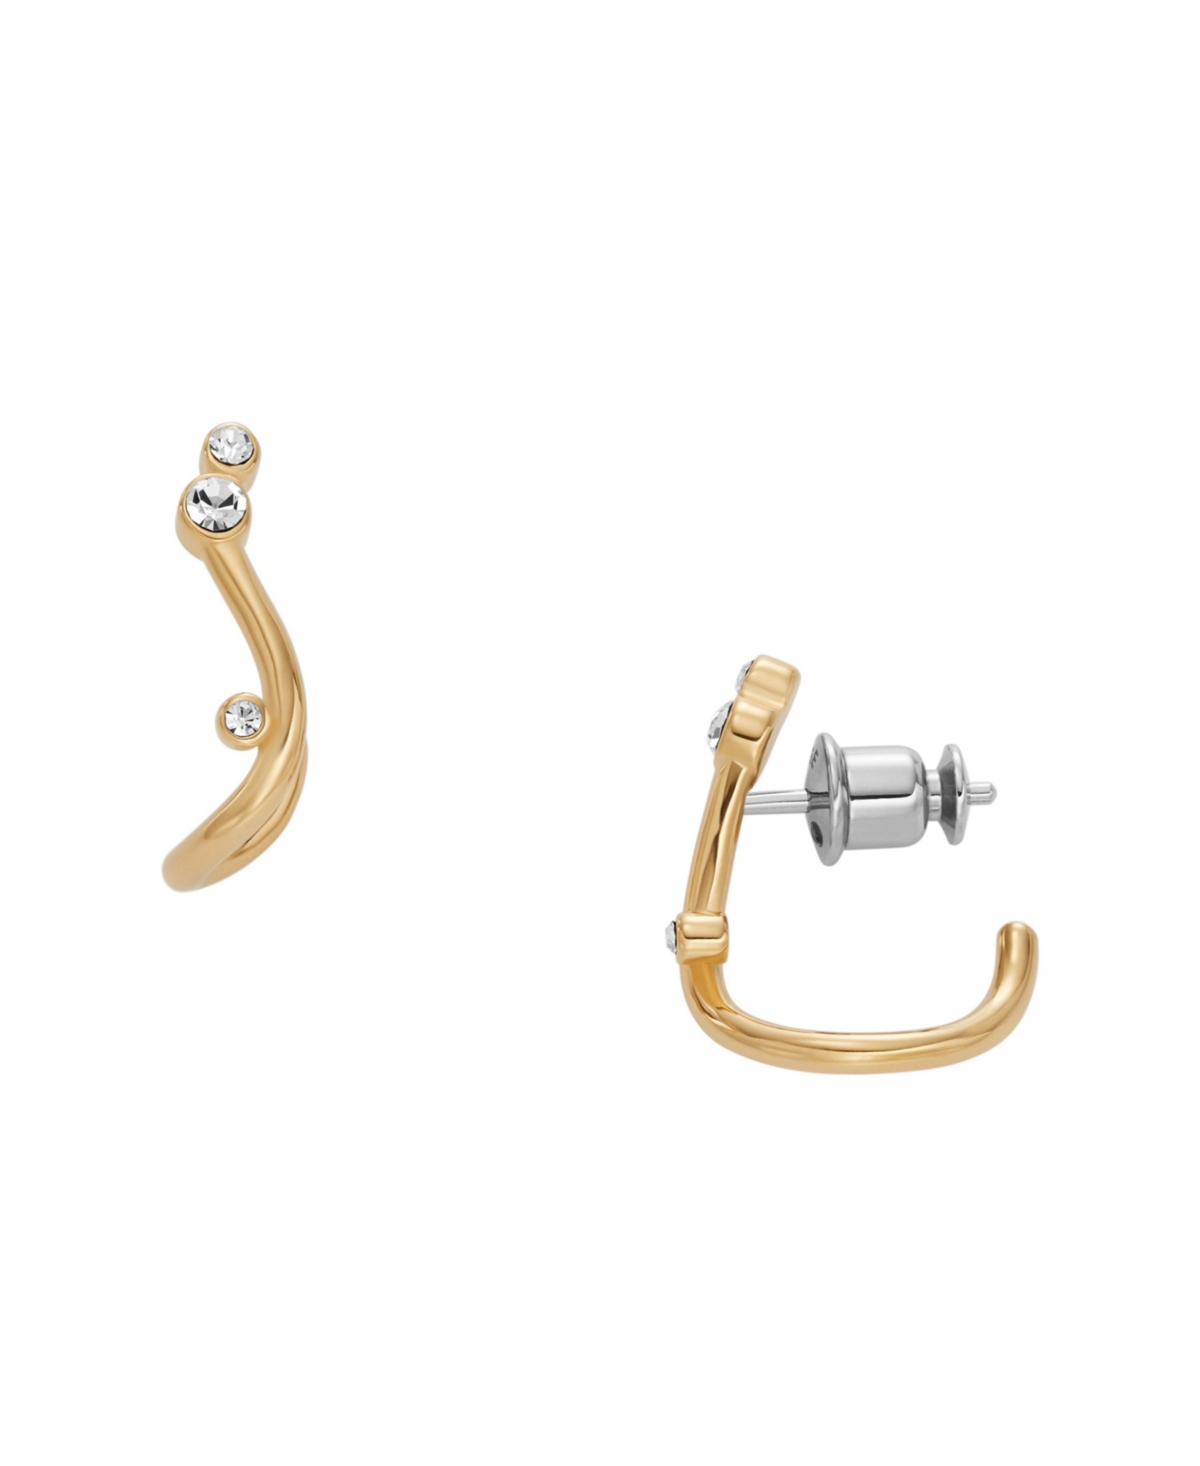 Women's Glitz Wave Gold-Tone Stainless Steel Hoop Earrings - Gold